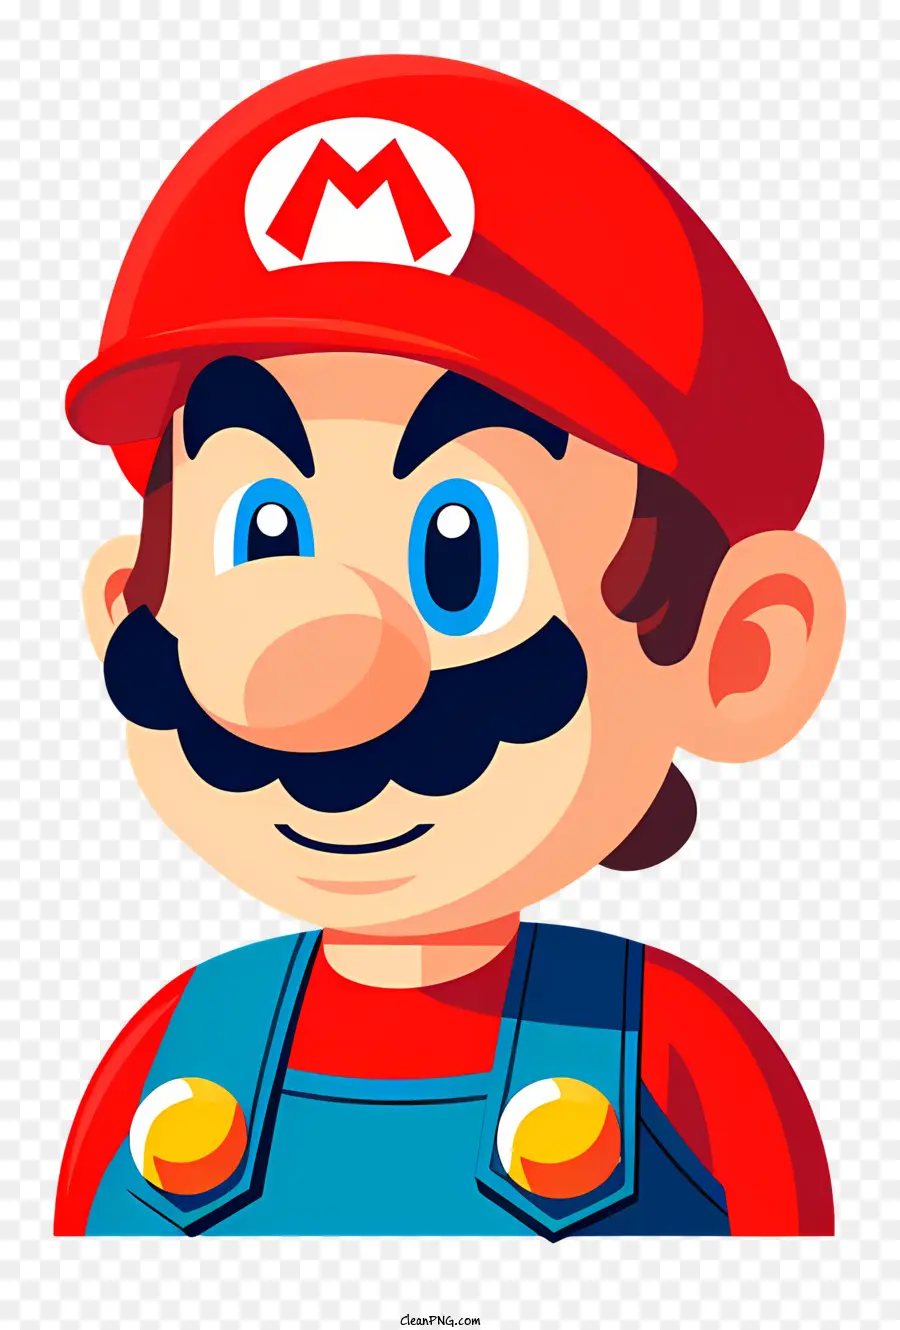 nền trắng - Nhân vật hoạt hình Mario, đội mũ màu đỏ và ria mép